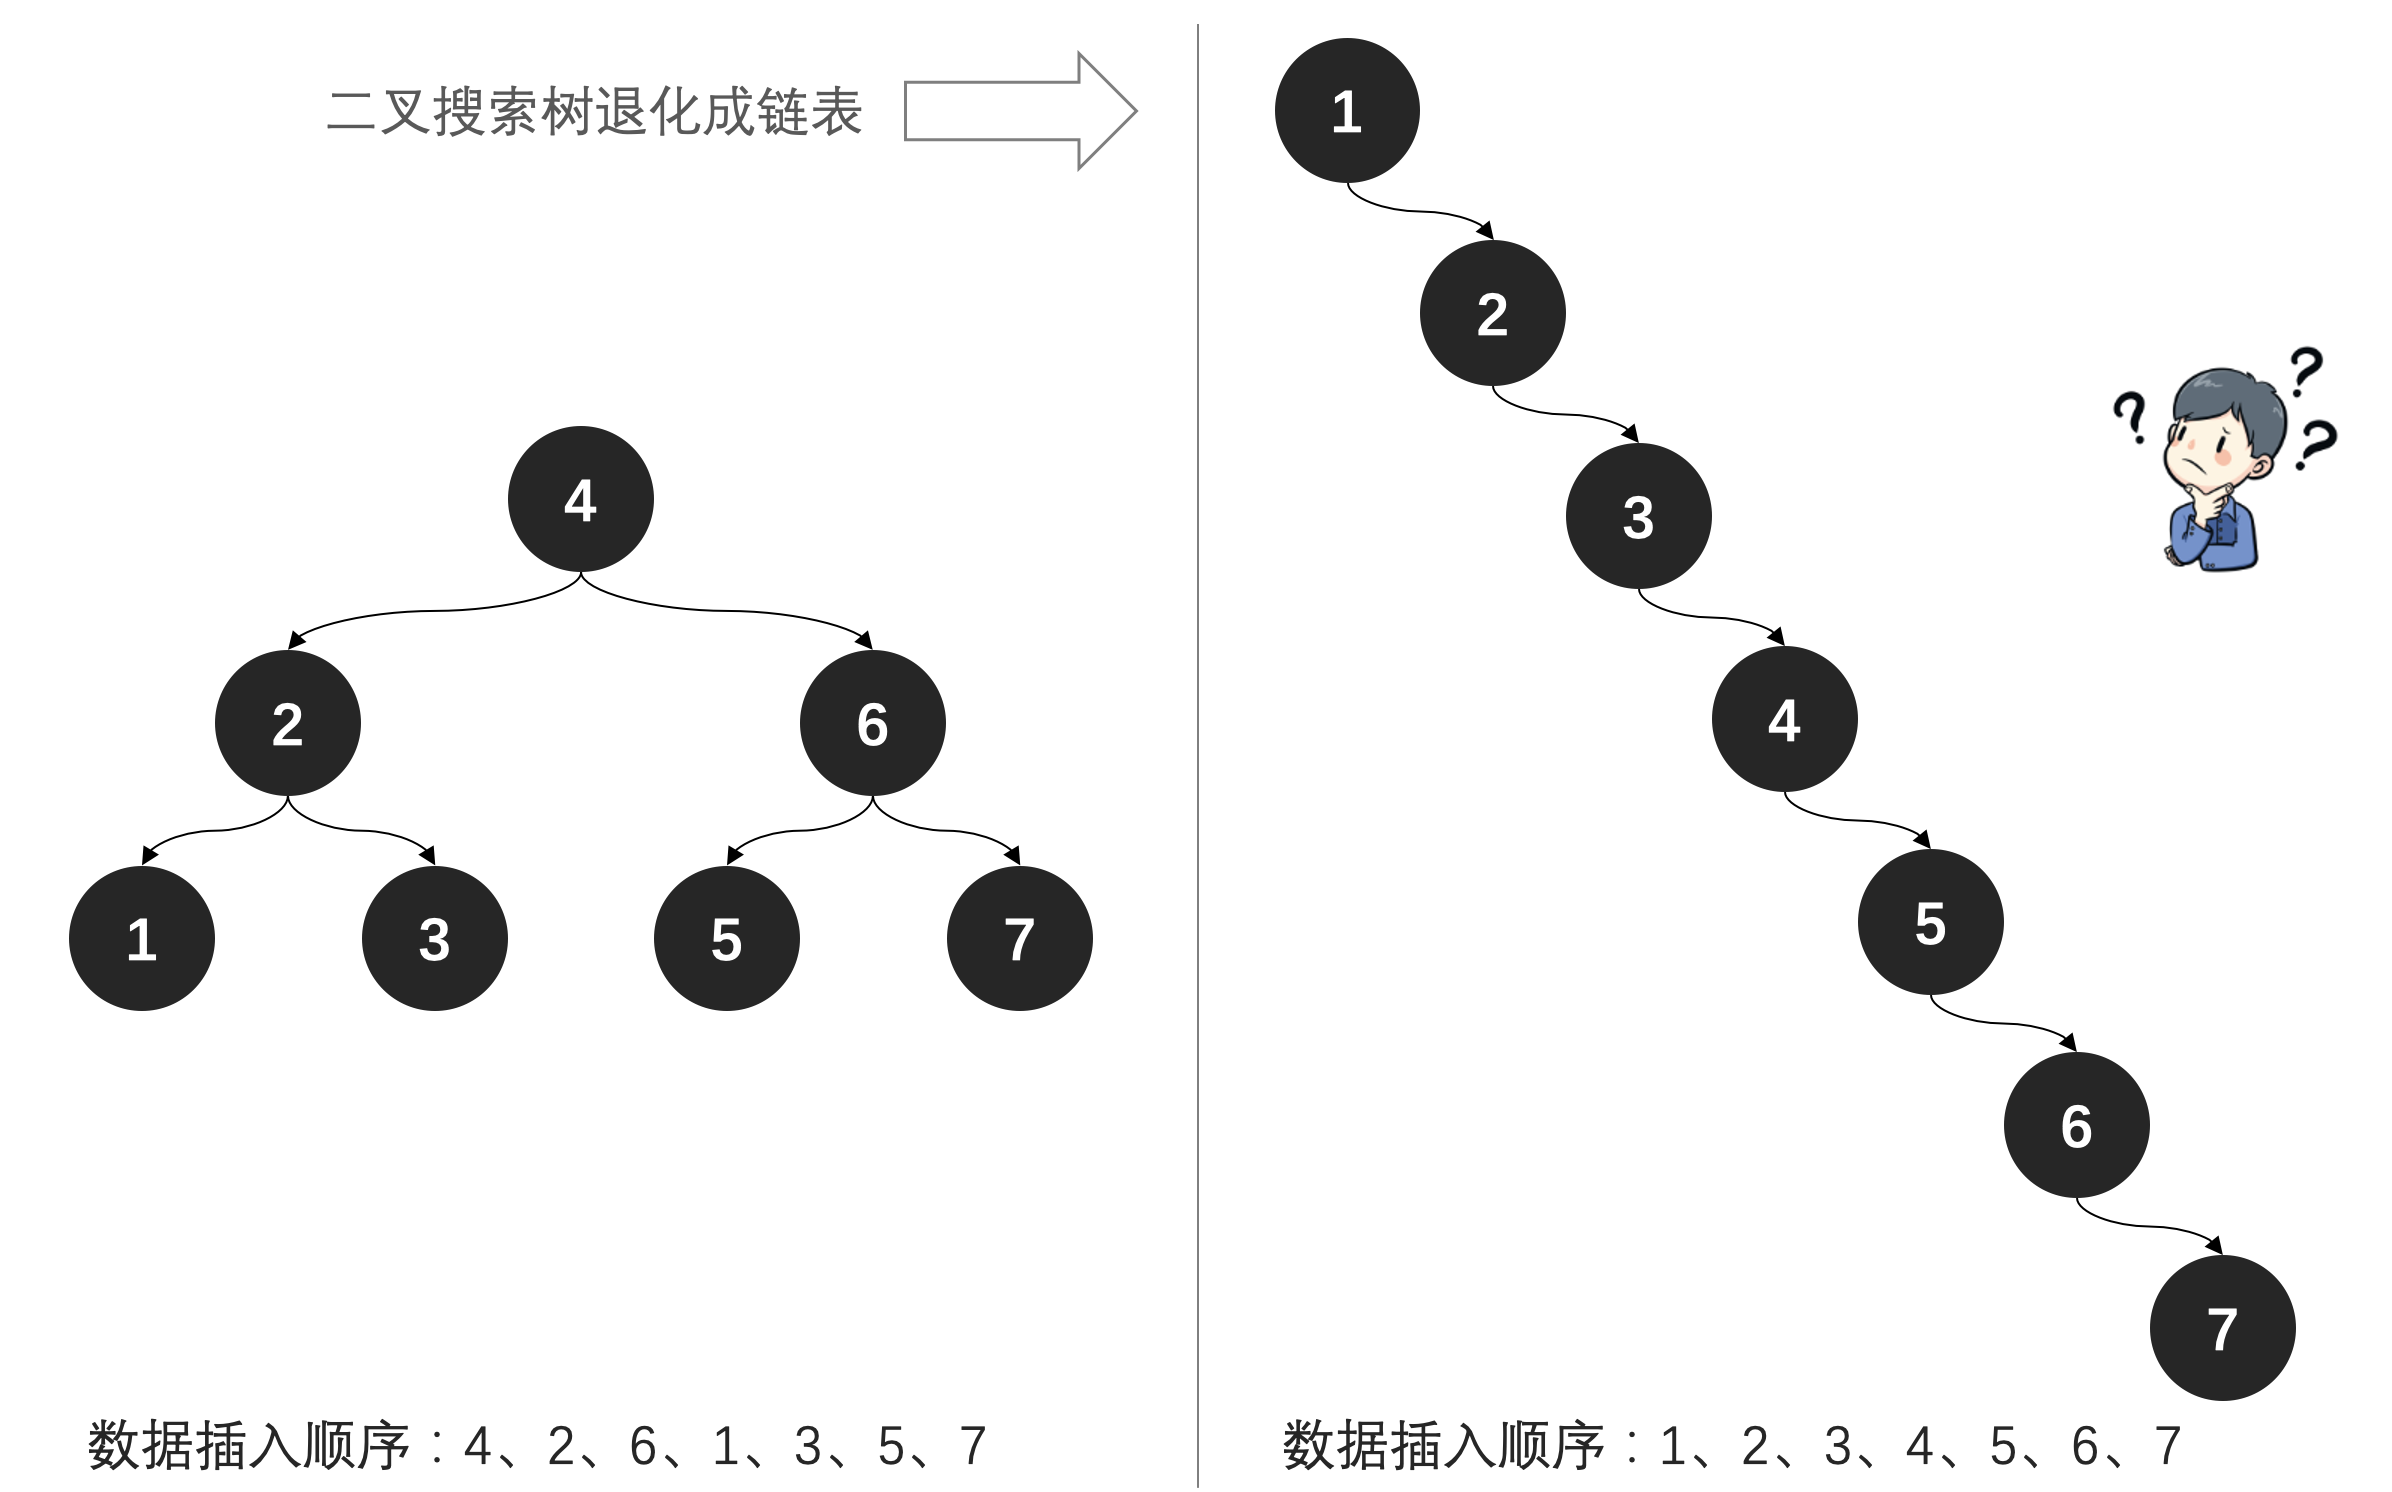 2-3平衡树 (红黑树的前身) - 图2